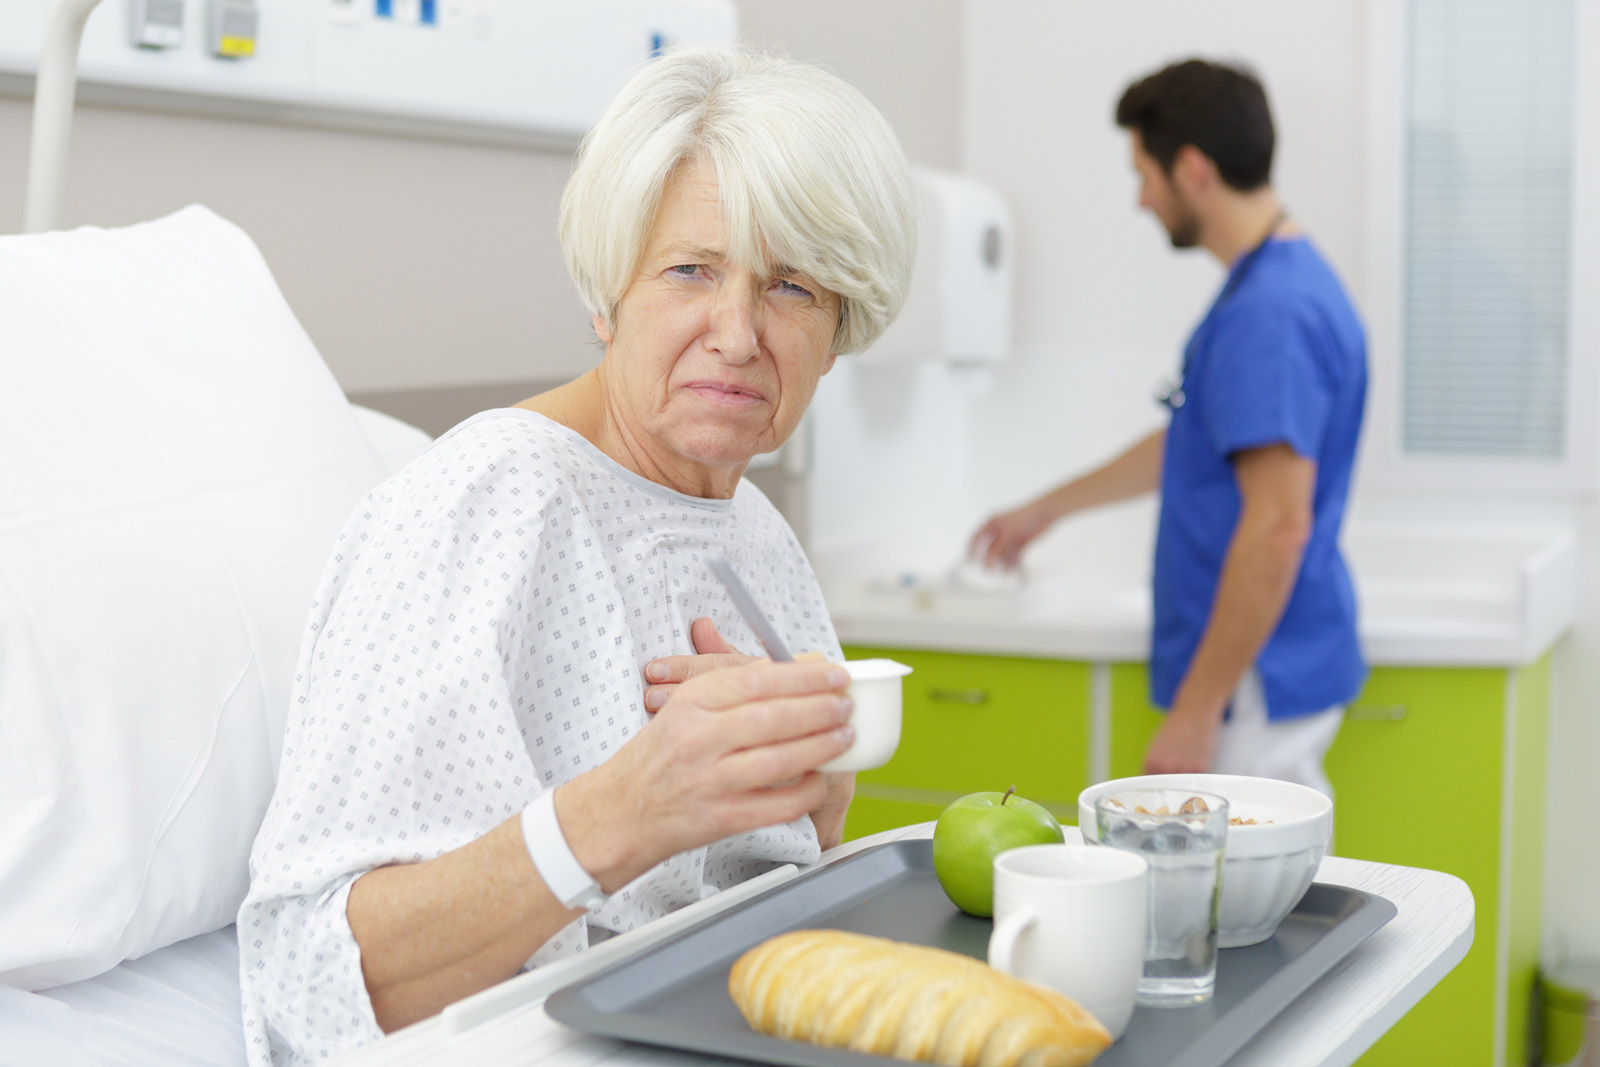 EIne ältere Dame sitzt im Krankenbett vor ihrem Menü und guckt verbittert